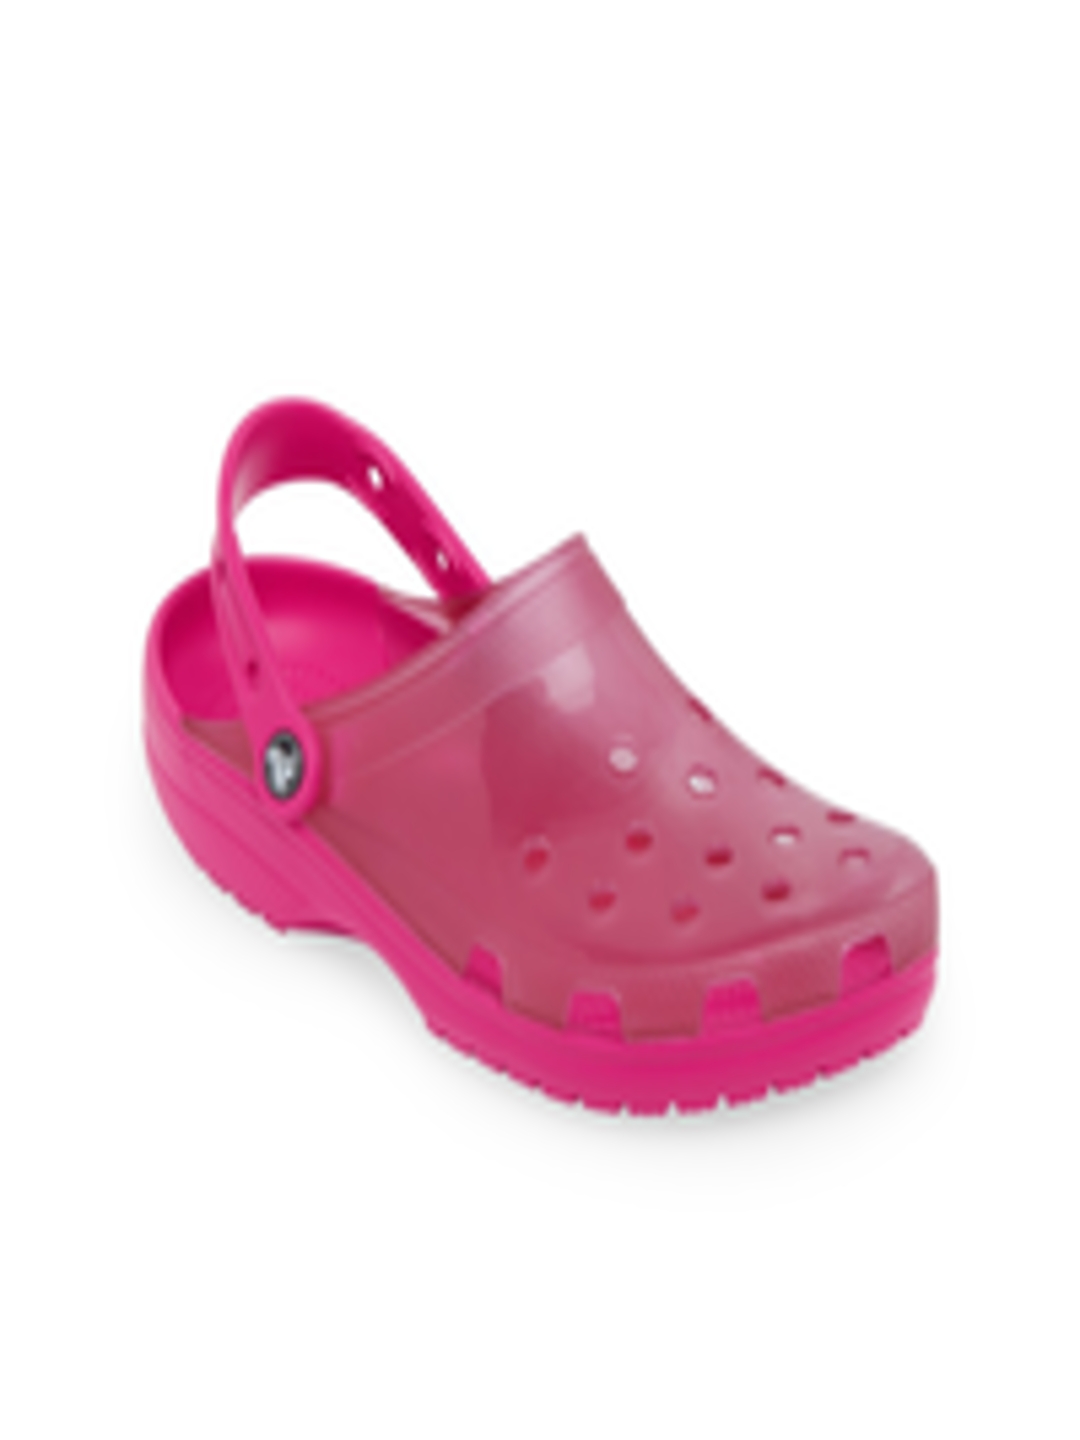 Buy Crocs Classic Unisex Pink Clogs Sandals - Sandals for Unisex ...